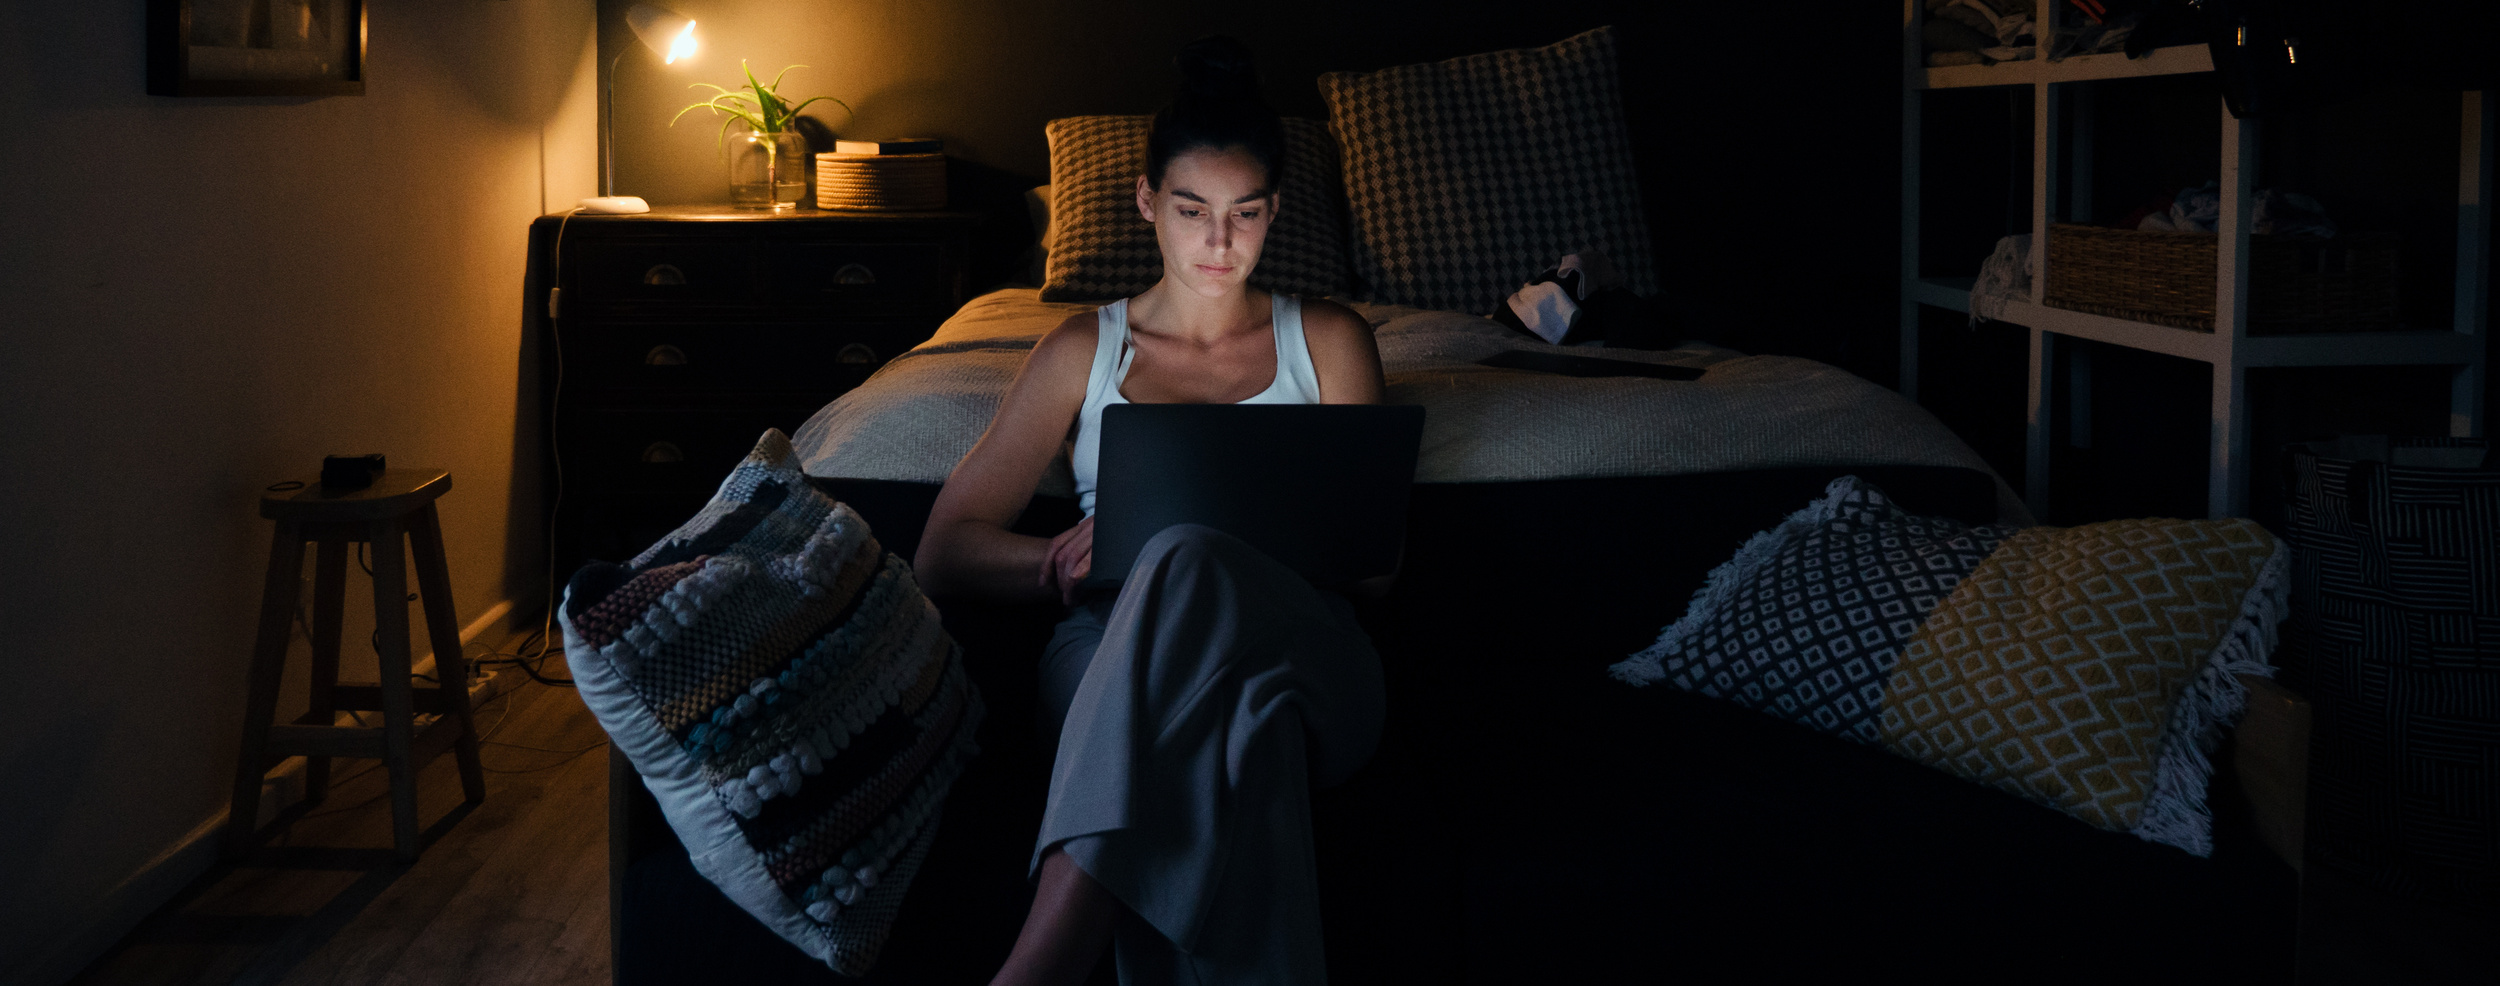 Faire des nuits de 7 à 9 heures de sommeil permettrait d’améliorer ses compétences en matière de raisonnement et de mémorisation. © Prins Productions, Adobe Stock